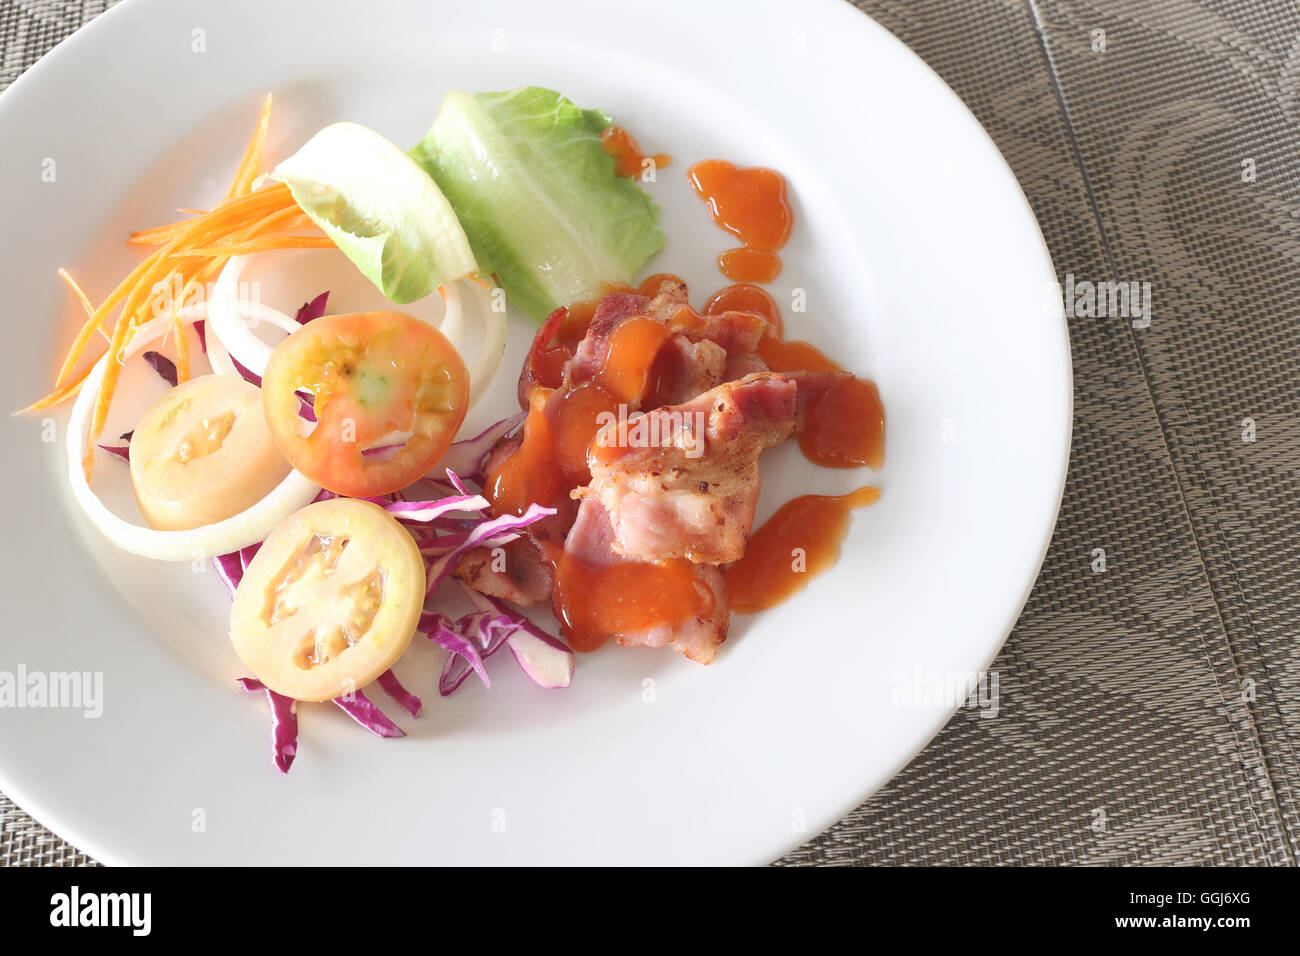 Ensaladas de verduras y salsa picante en un plato blanco en la tabla de alimentos. Foto de stock